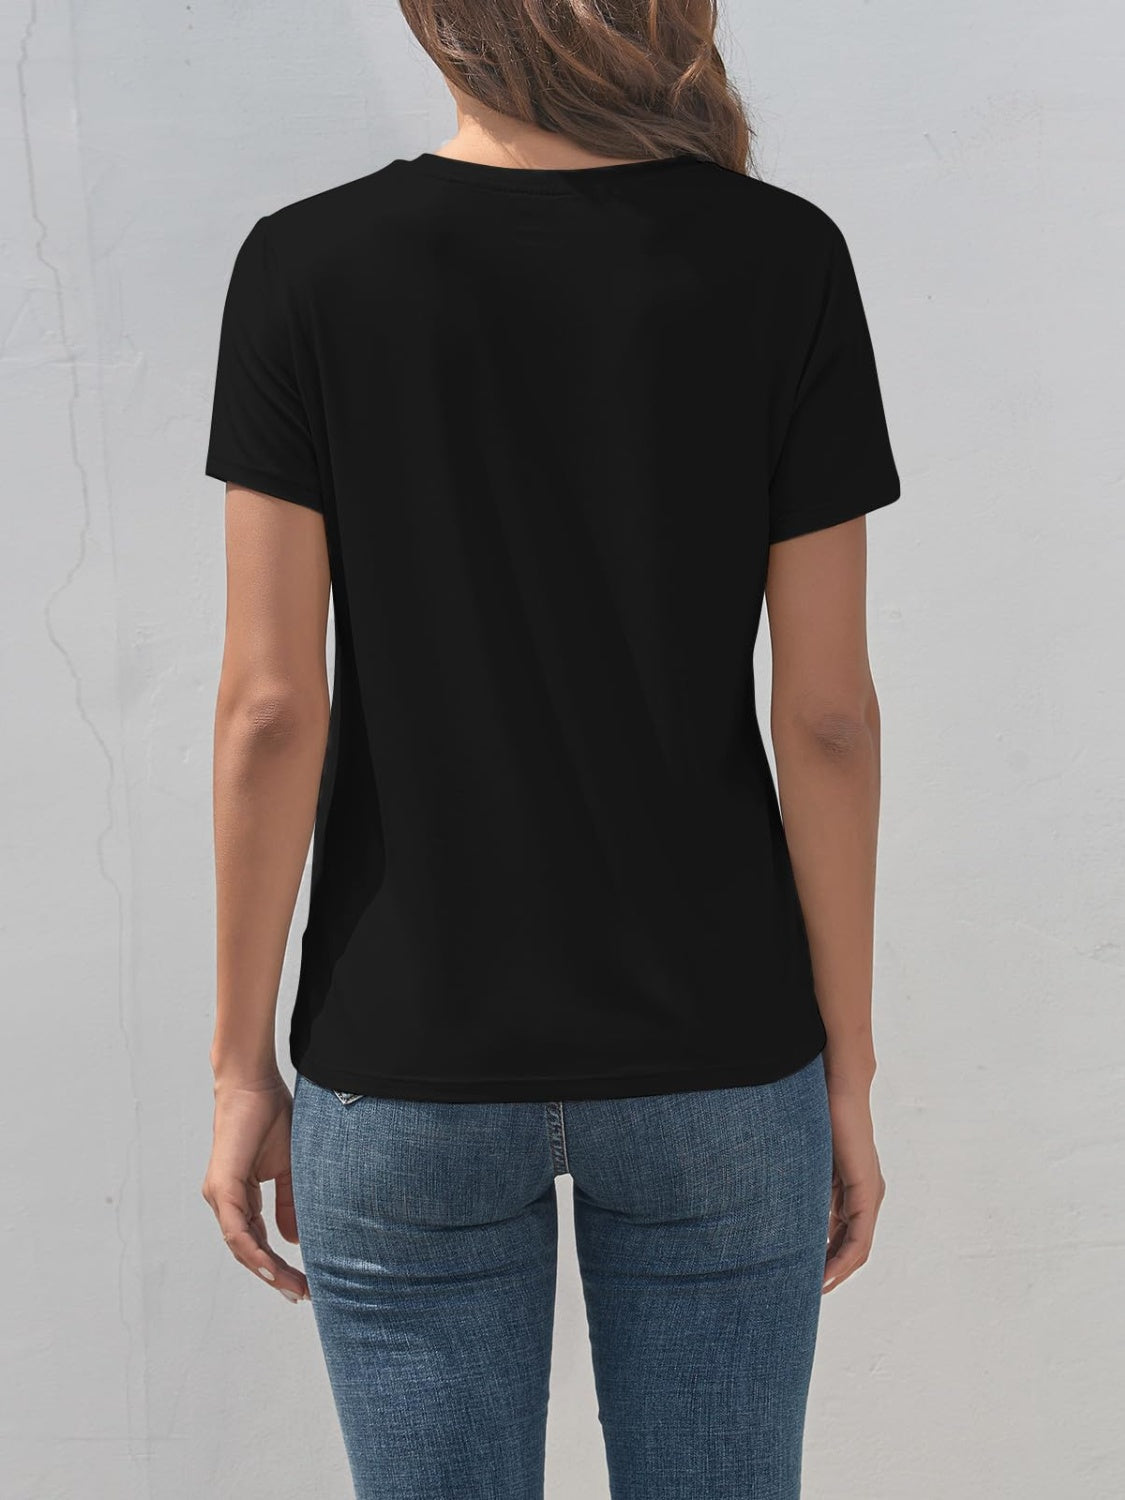 SMILE Round Neck Short Sleeve T-Shirt Black